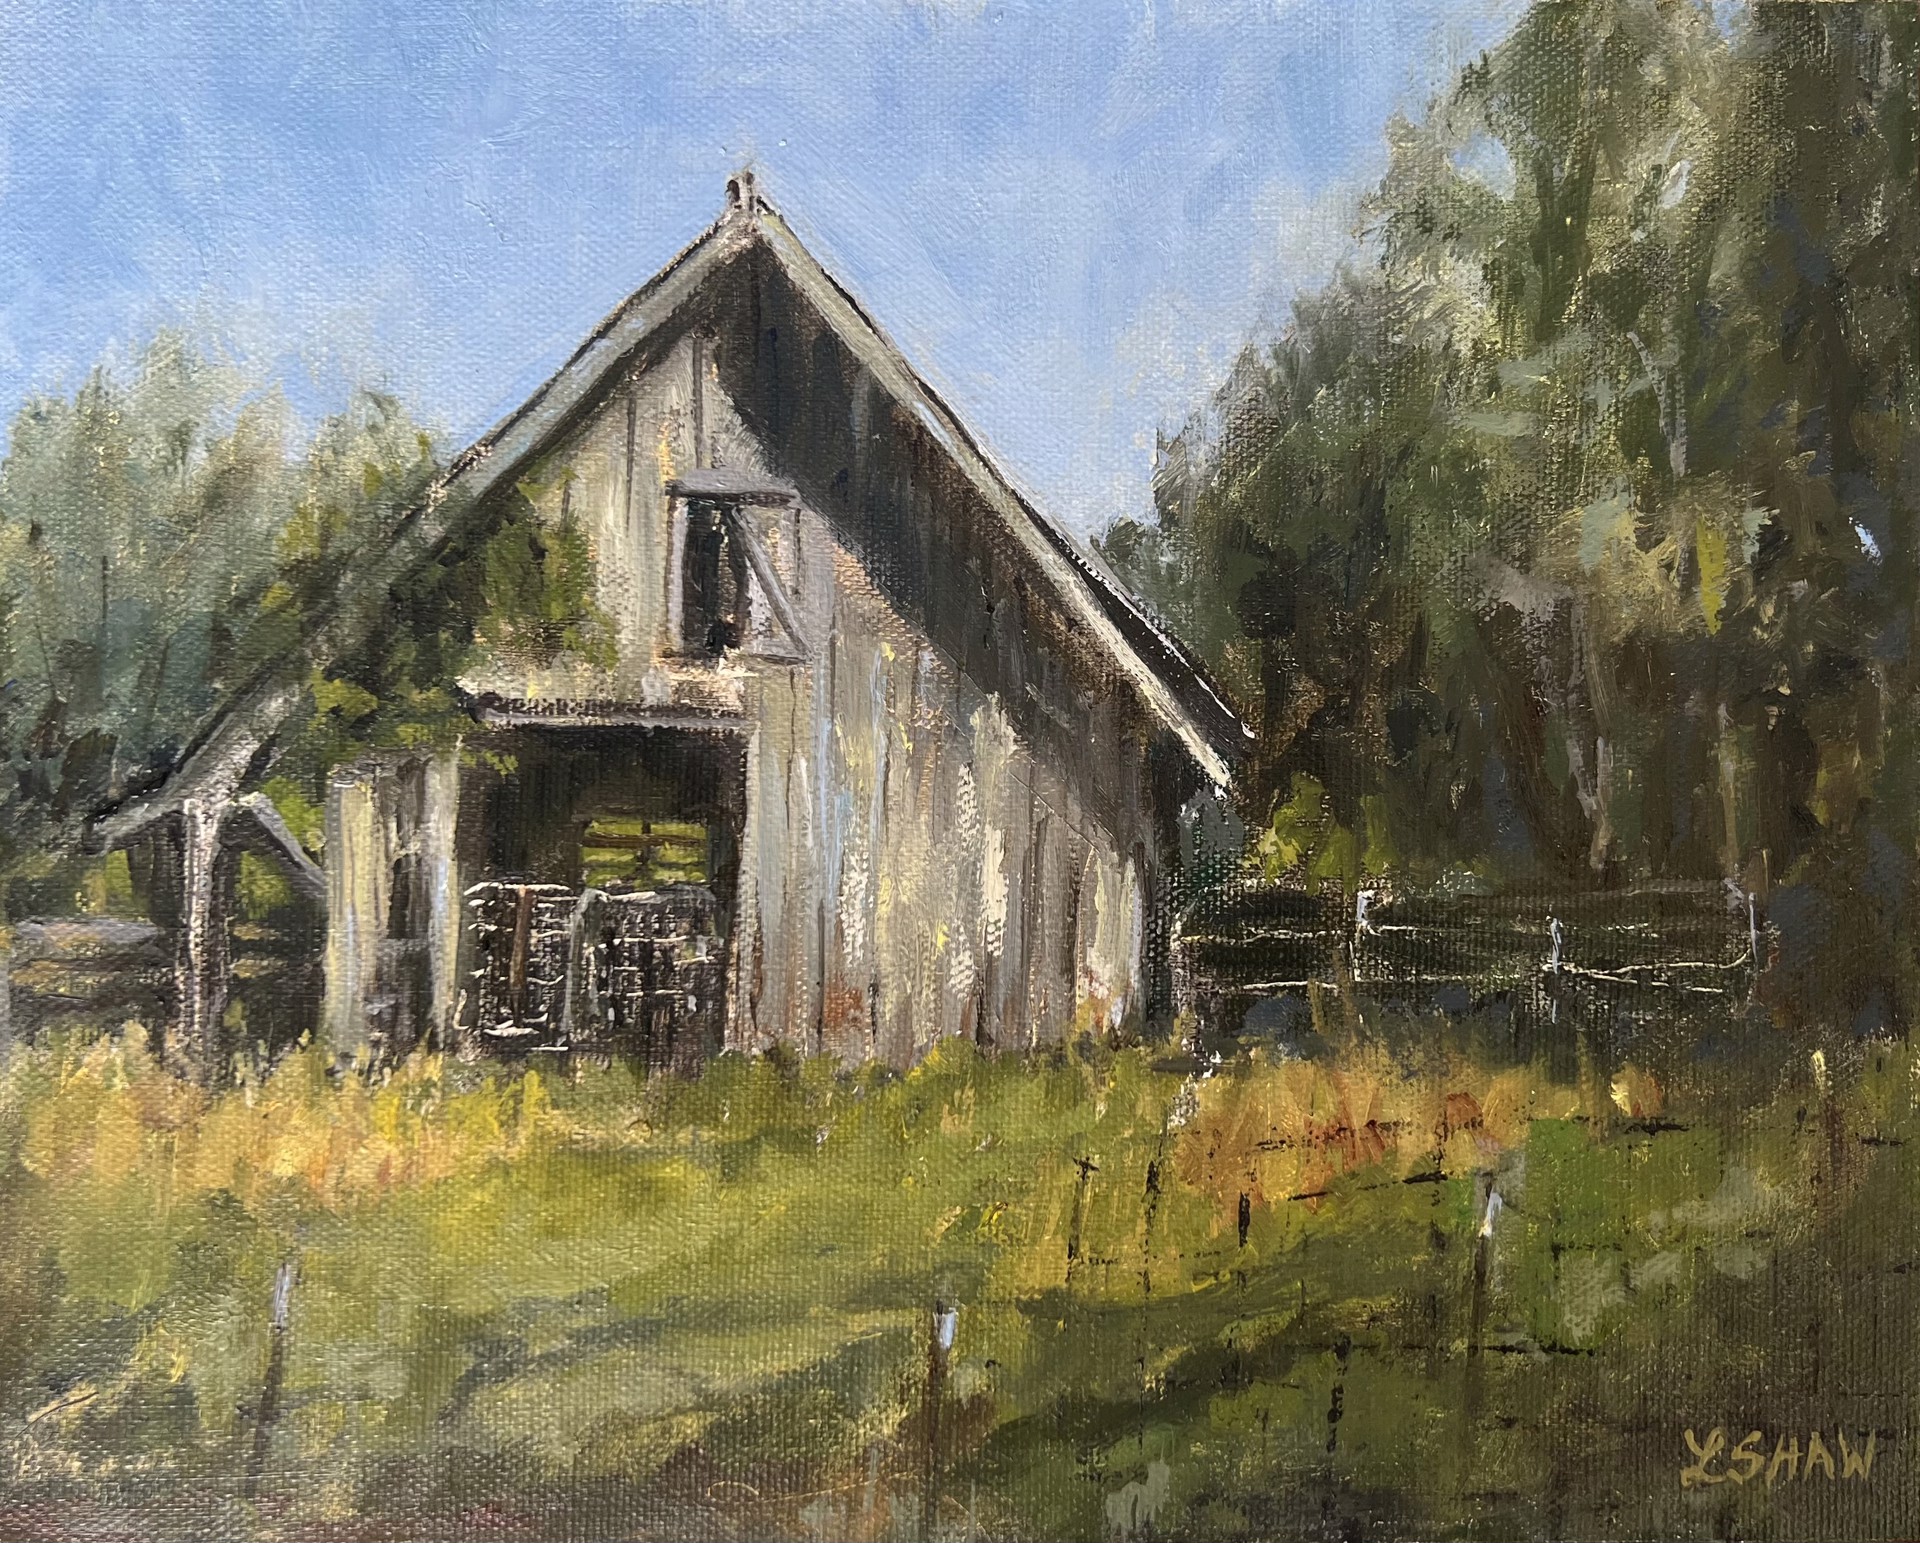 Tuckahoe Barn by Linda Shaw